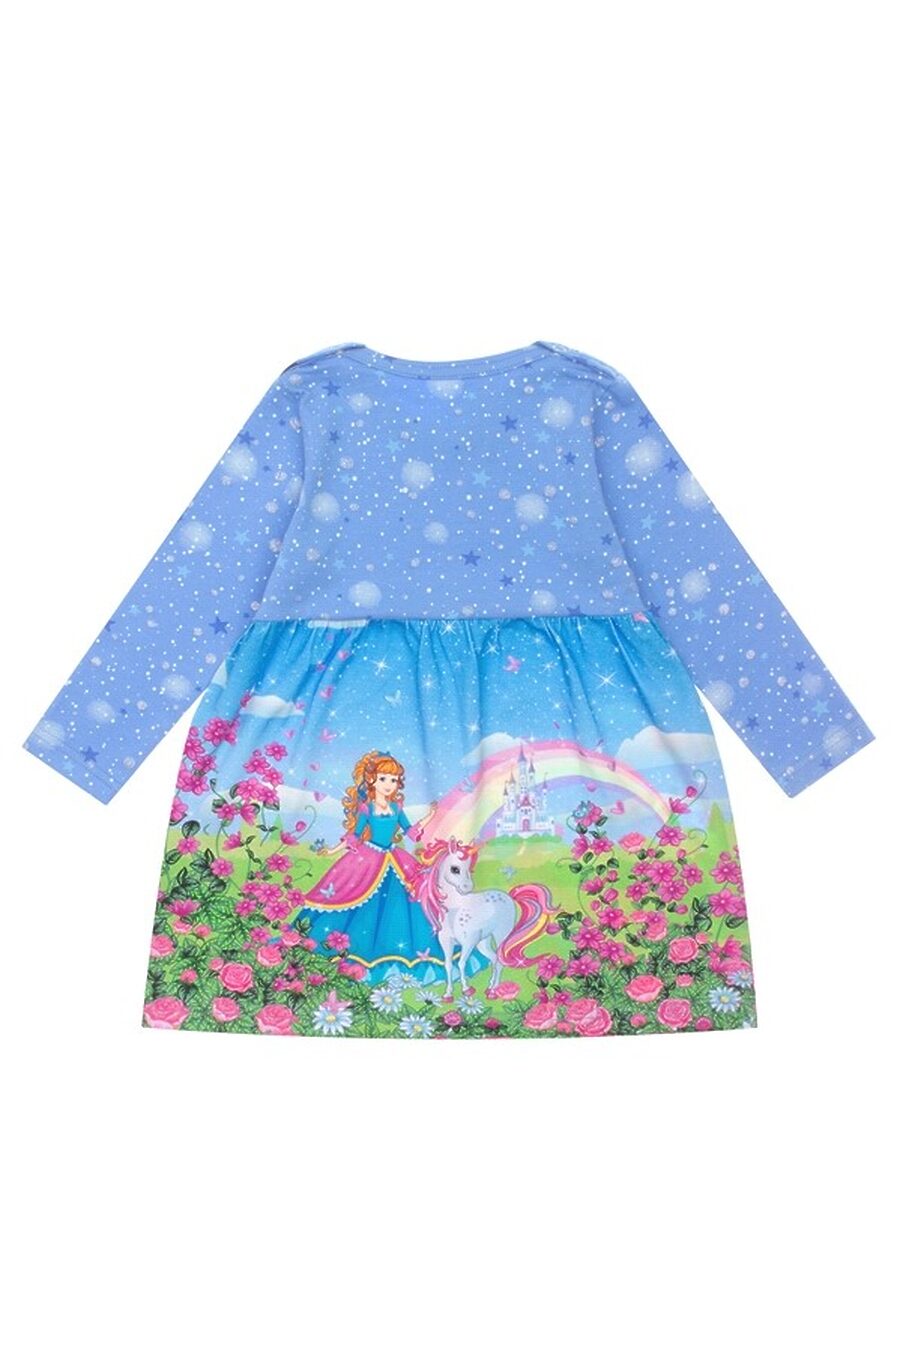 Платье для девочек АПРЕЛЬ 683530 купить оптом от производителя. Совместная покупка детской одежды в OptMoyo